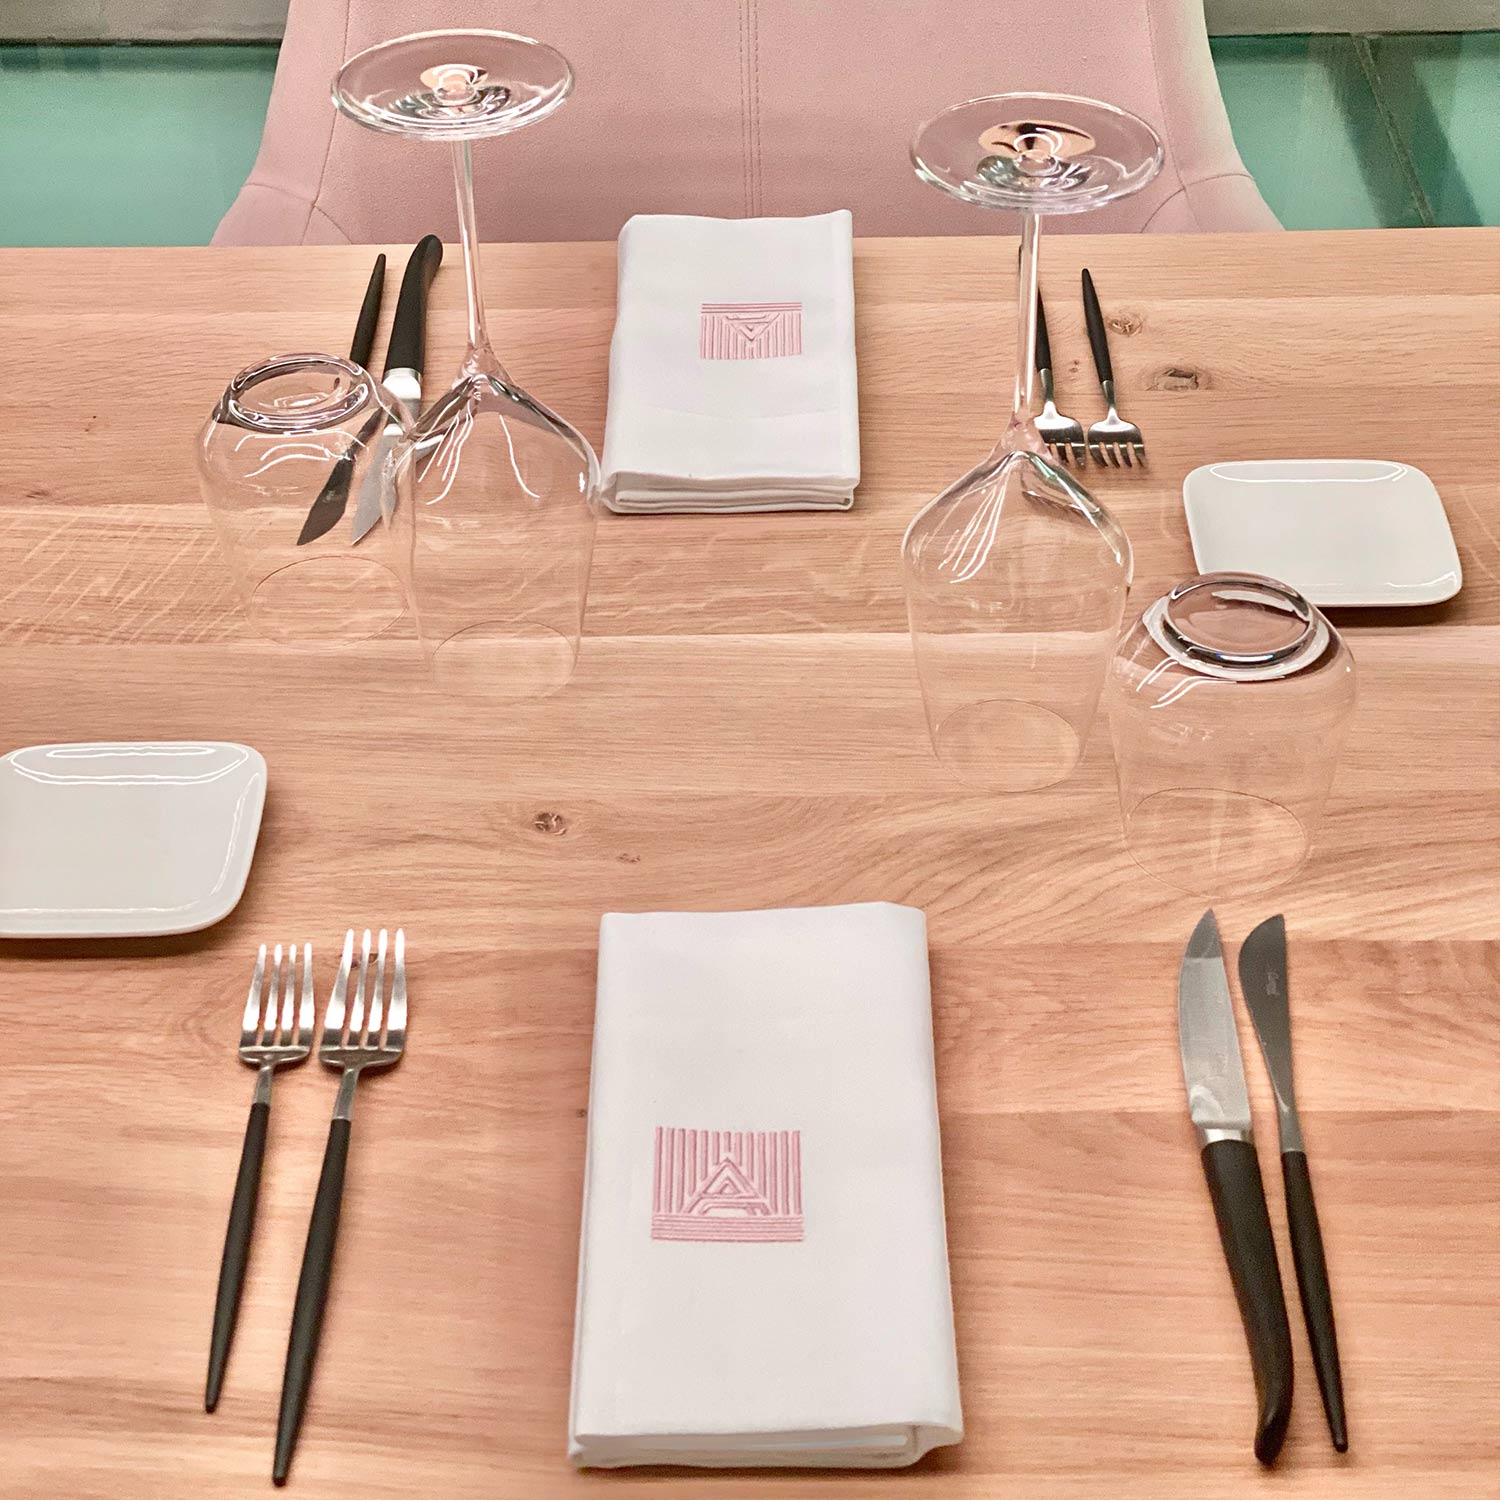 dressage-table-la-cantine-urbaine-restaurant-lieu-concept-artchives-lille-galerie-d-art-bar